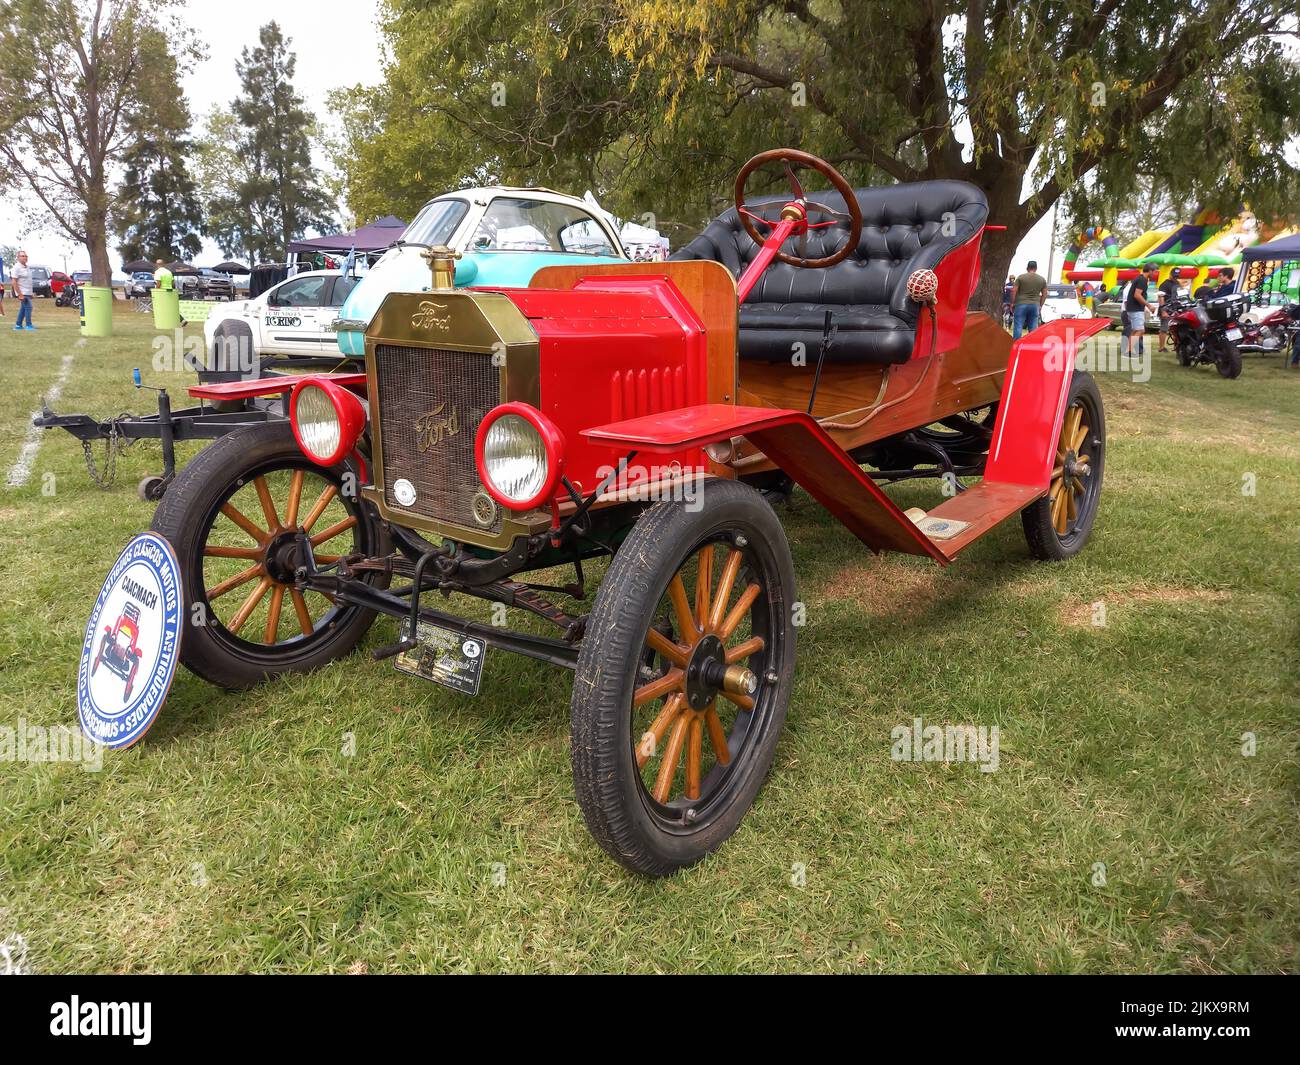 Chascomus, Argentinien - 9. Apr 2022: Alter roter Ford Model T Roadster Tudor um 1920. Seitenansicht. Natur grünes Gras und Bäume Hintergrund. Oldtimer-sh Stockfoto